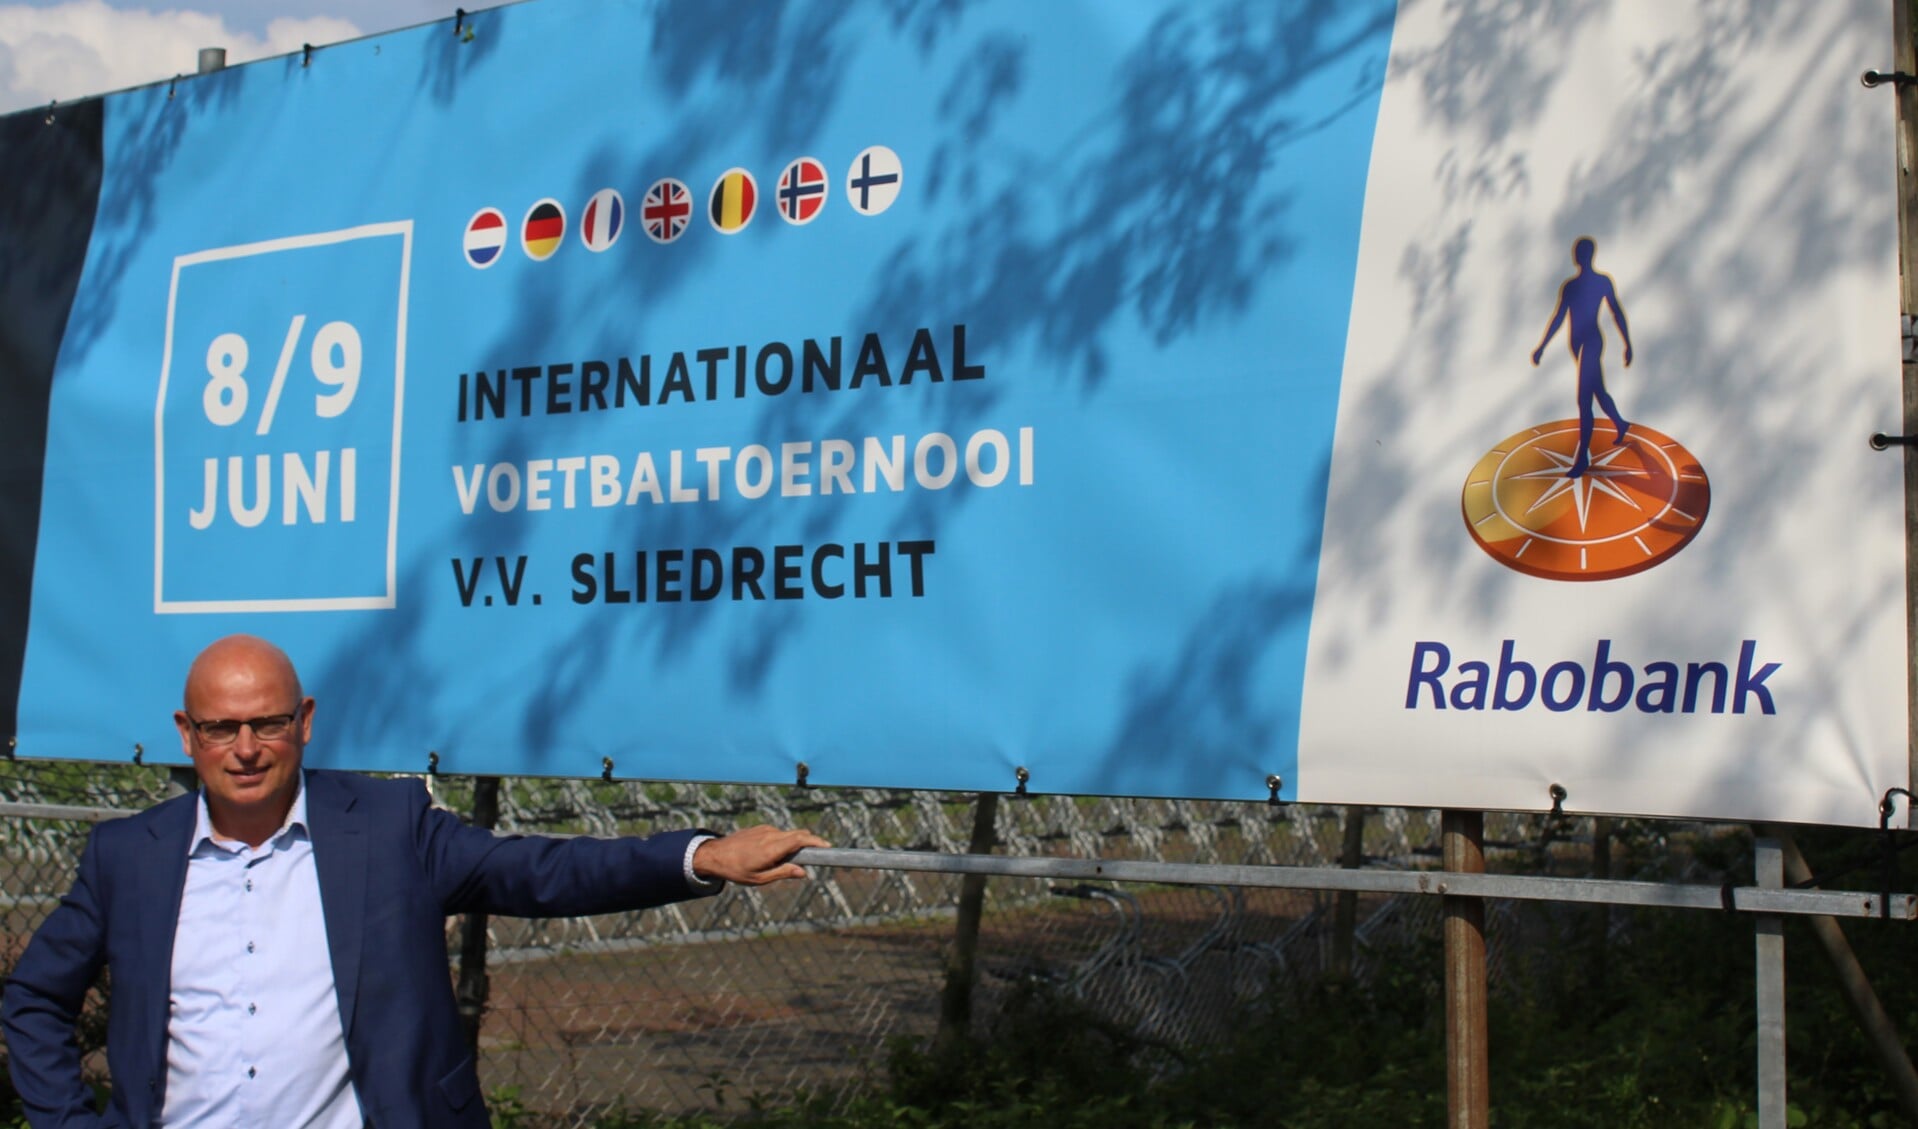 Vermogensmanager Marco van Zuijdam is de verbindende factor tussen de Rabobank en de Baggercup.